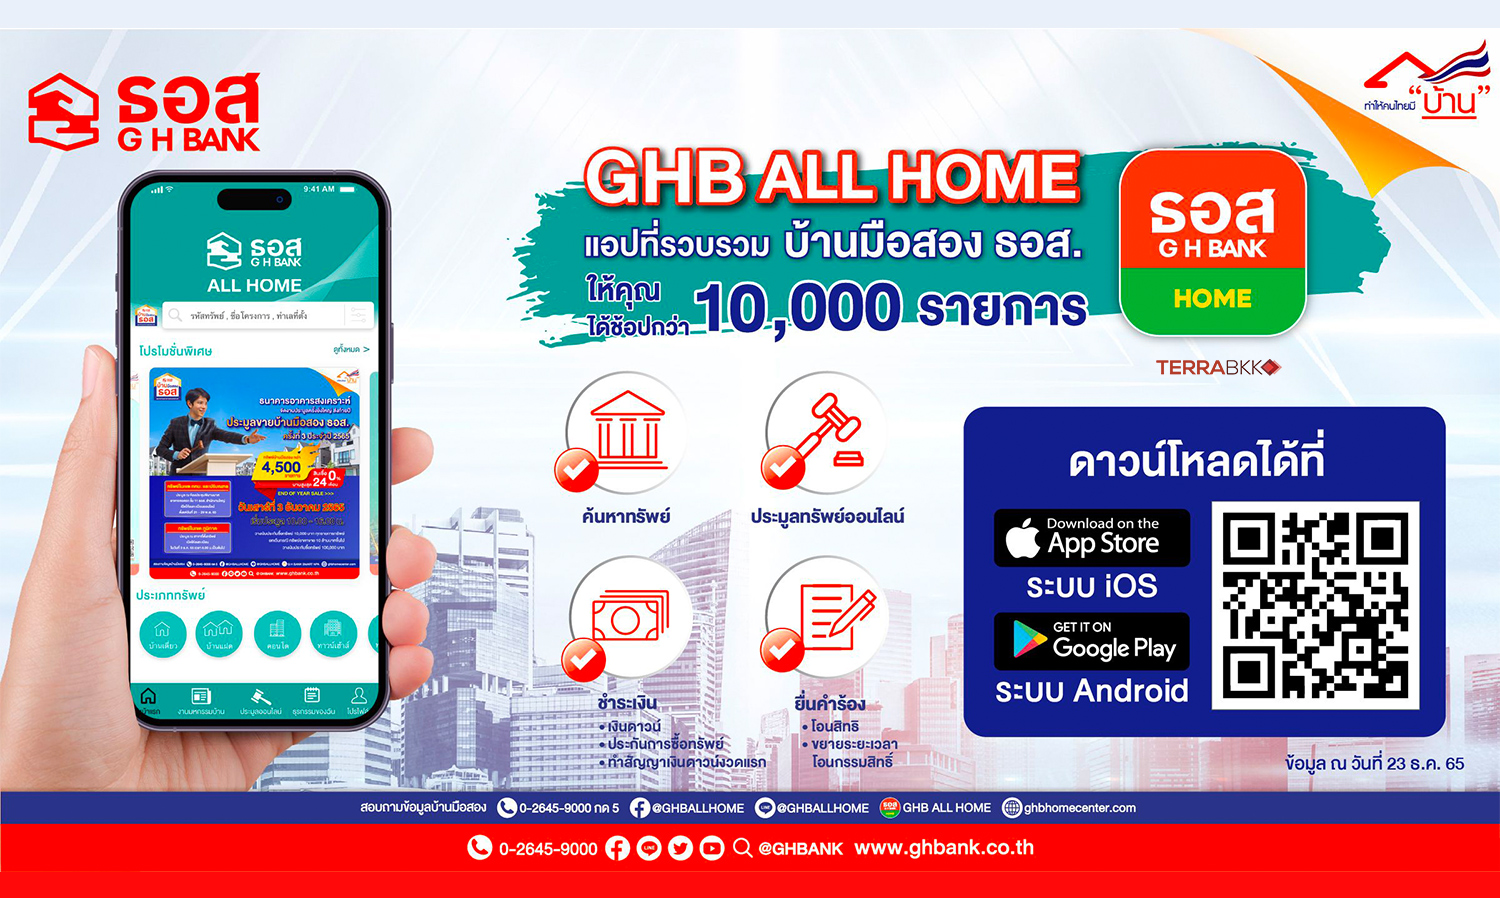 ธอส. ยกระดับ Application GHBank Smart NPA เป็น GHB ALL HOME รวมบ้านมือสอง ธอส. ไว้ให้เลือกมากกว่า 10,000 รายการ 